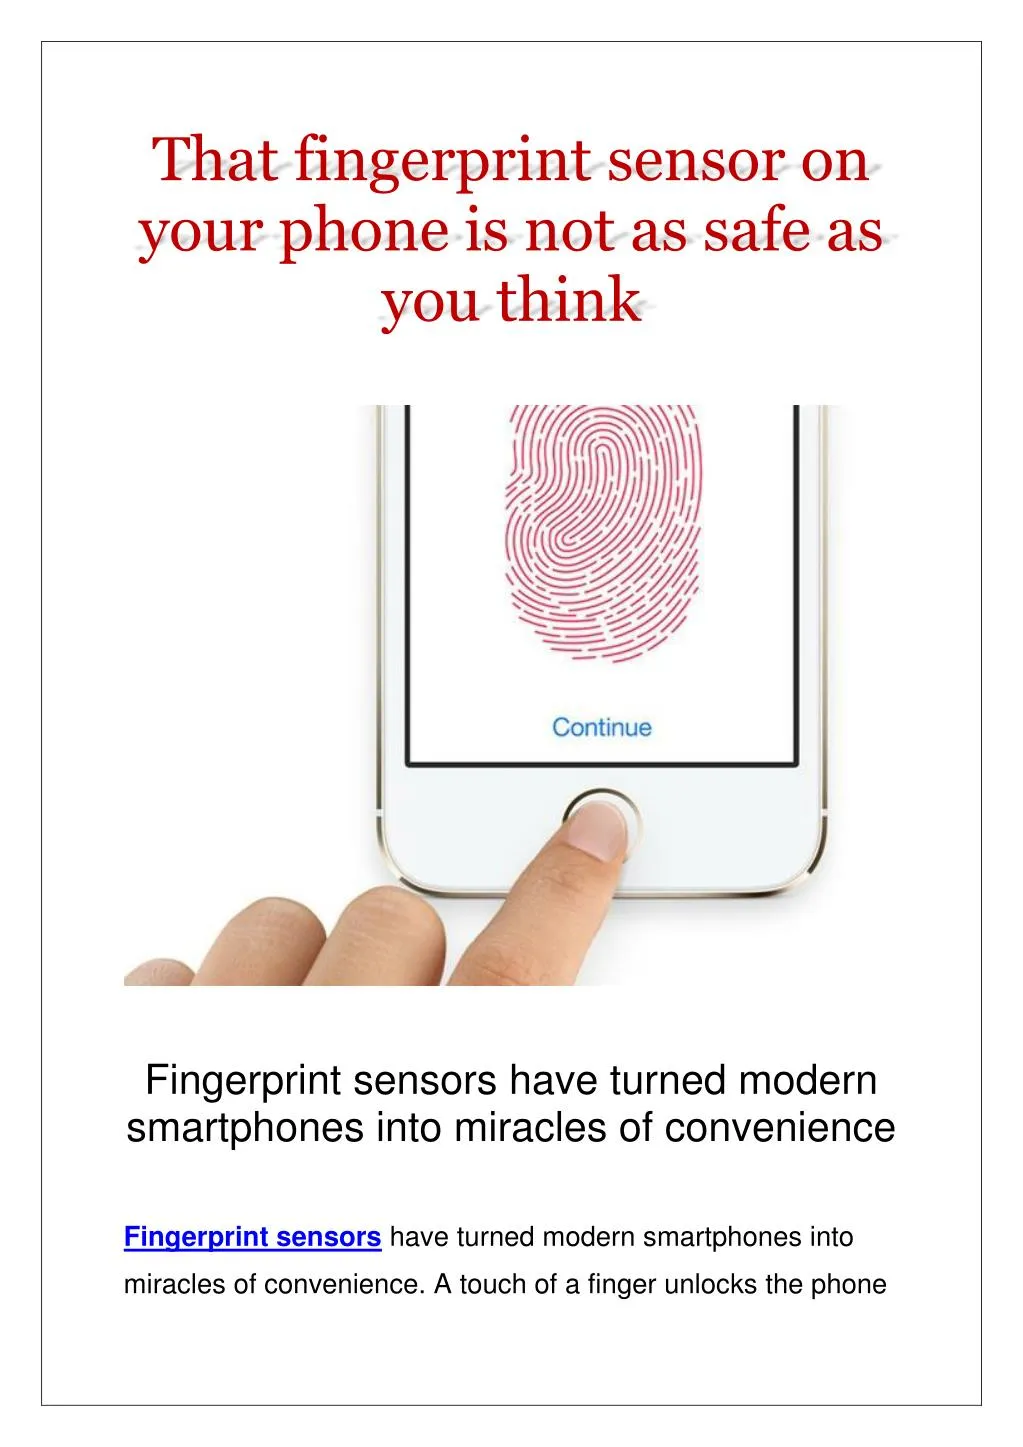 that fingerprint sensor on your phone